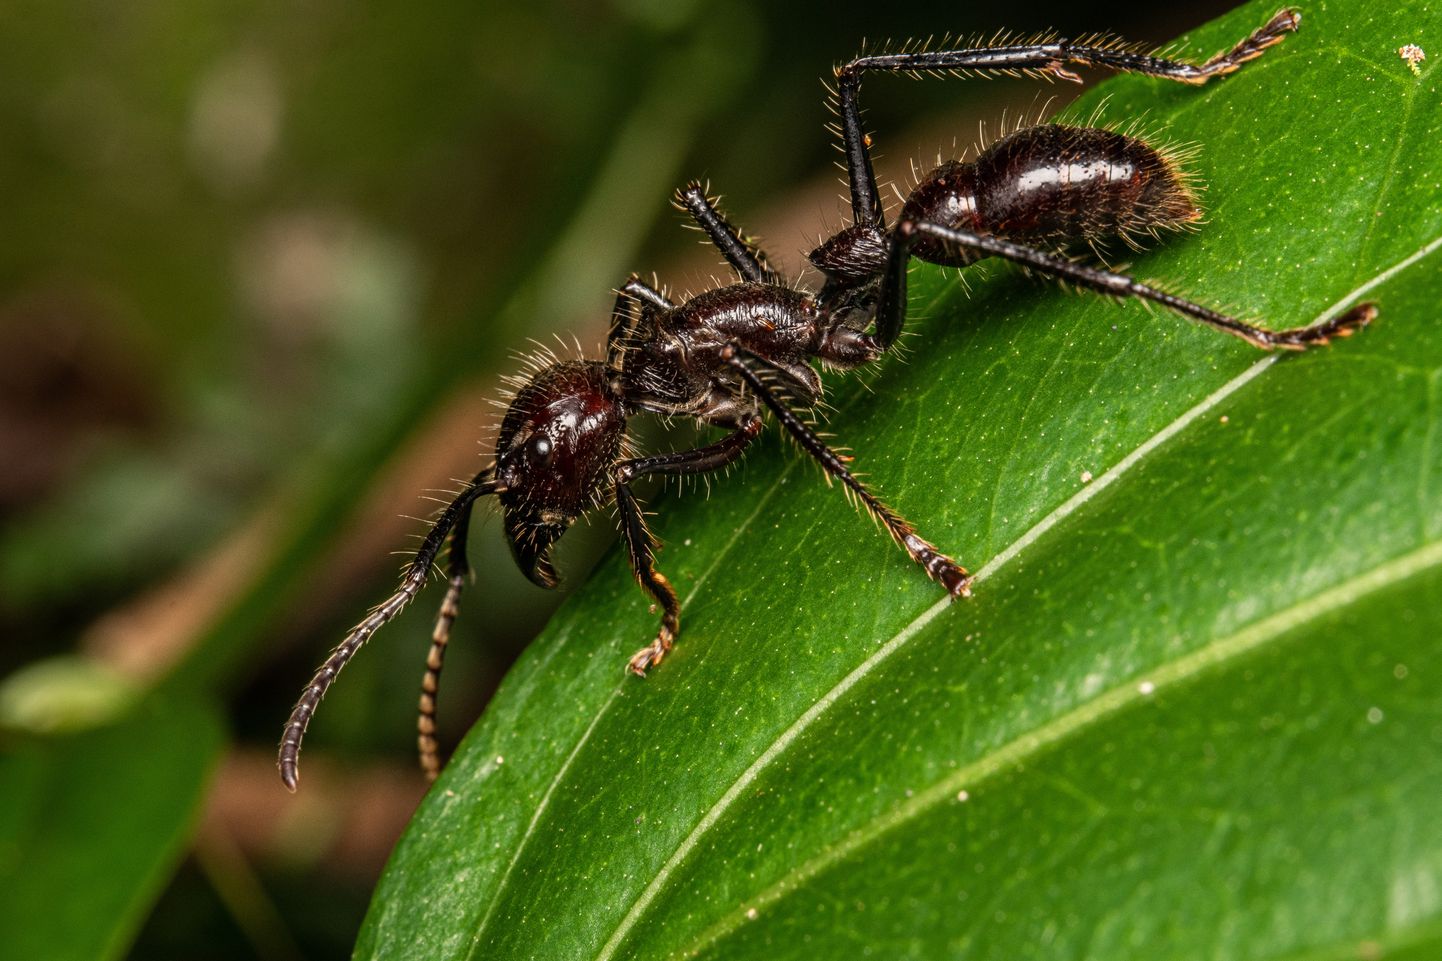 Kuulsipelgas on üks ohtlikumaid putukaliike maailmas, kes põhjustab kauakestvat valu.